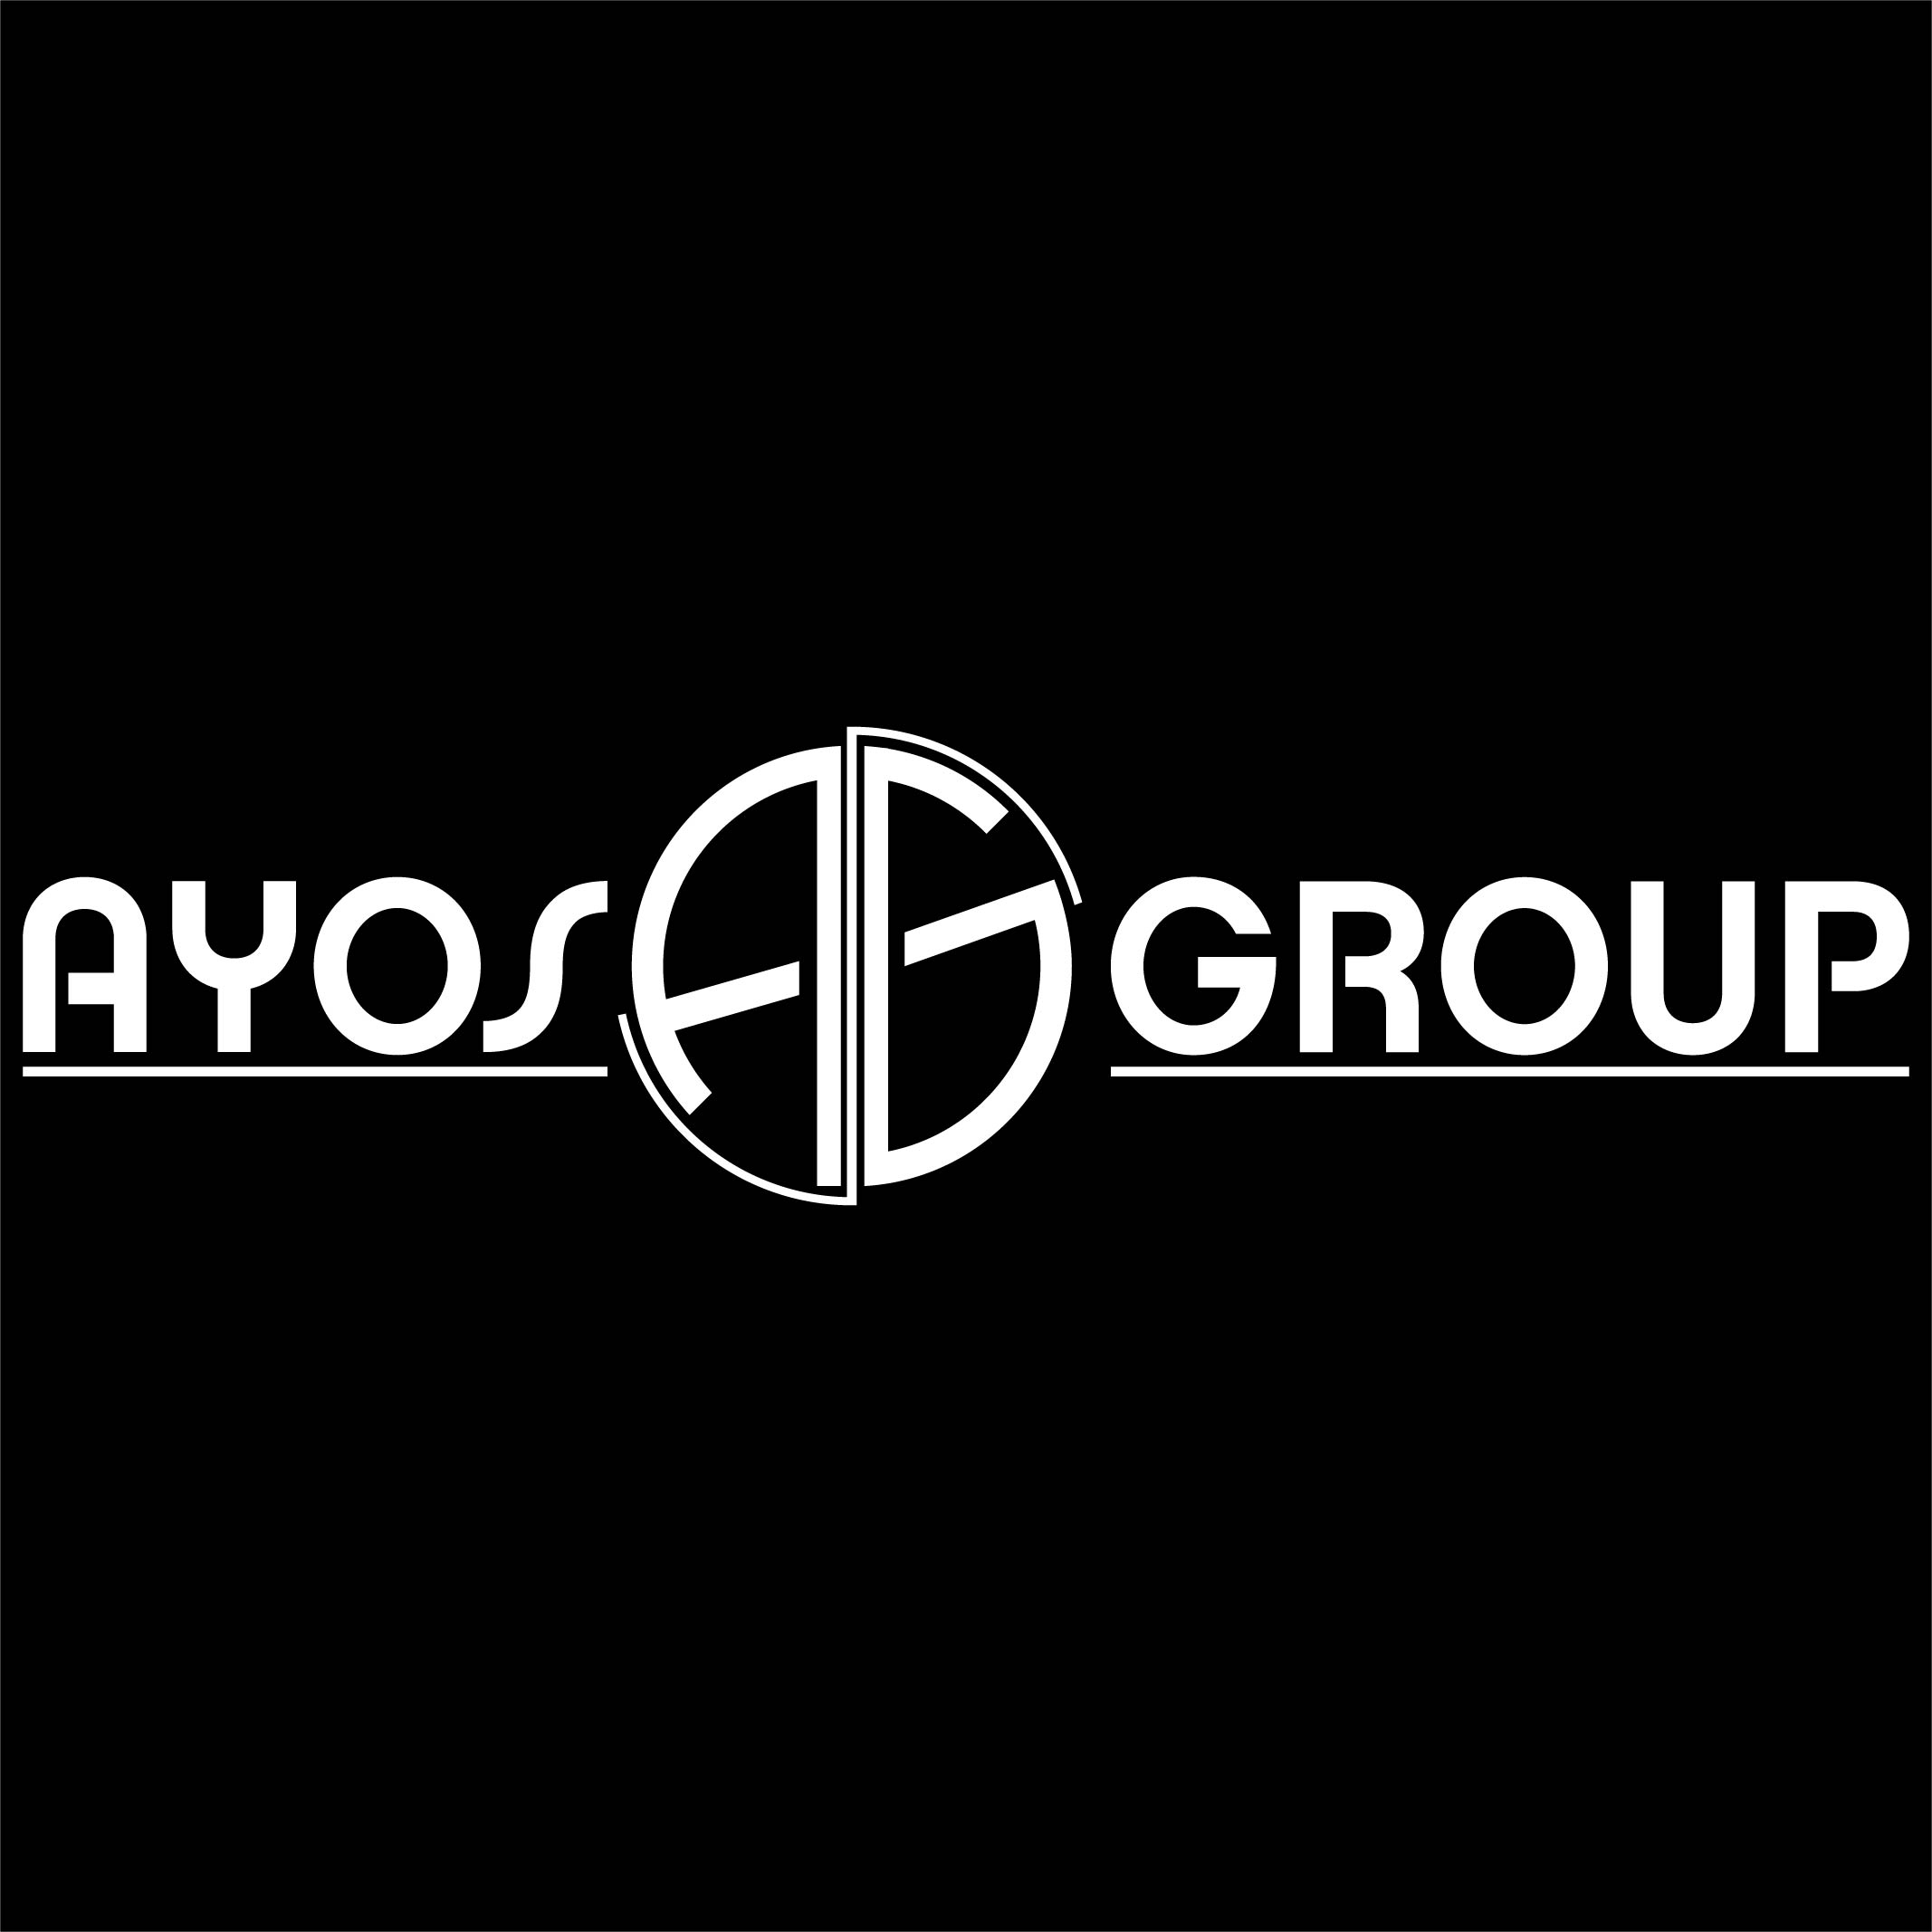 Ayos-Group-Logo-Beyaz-